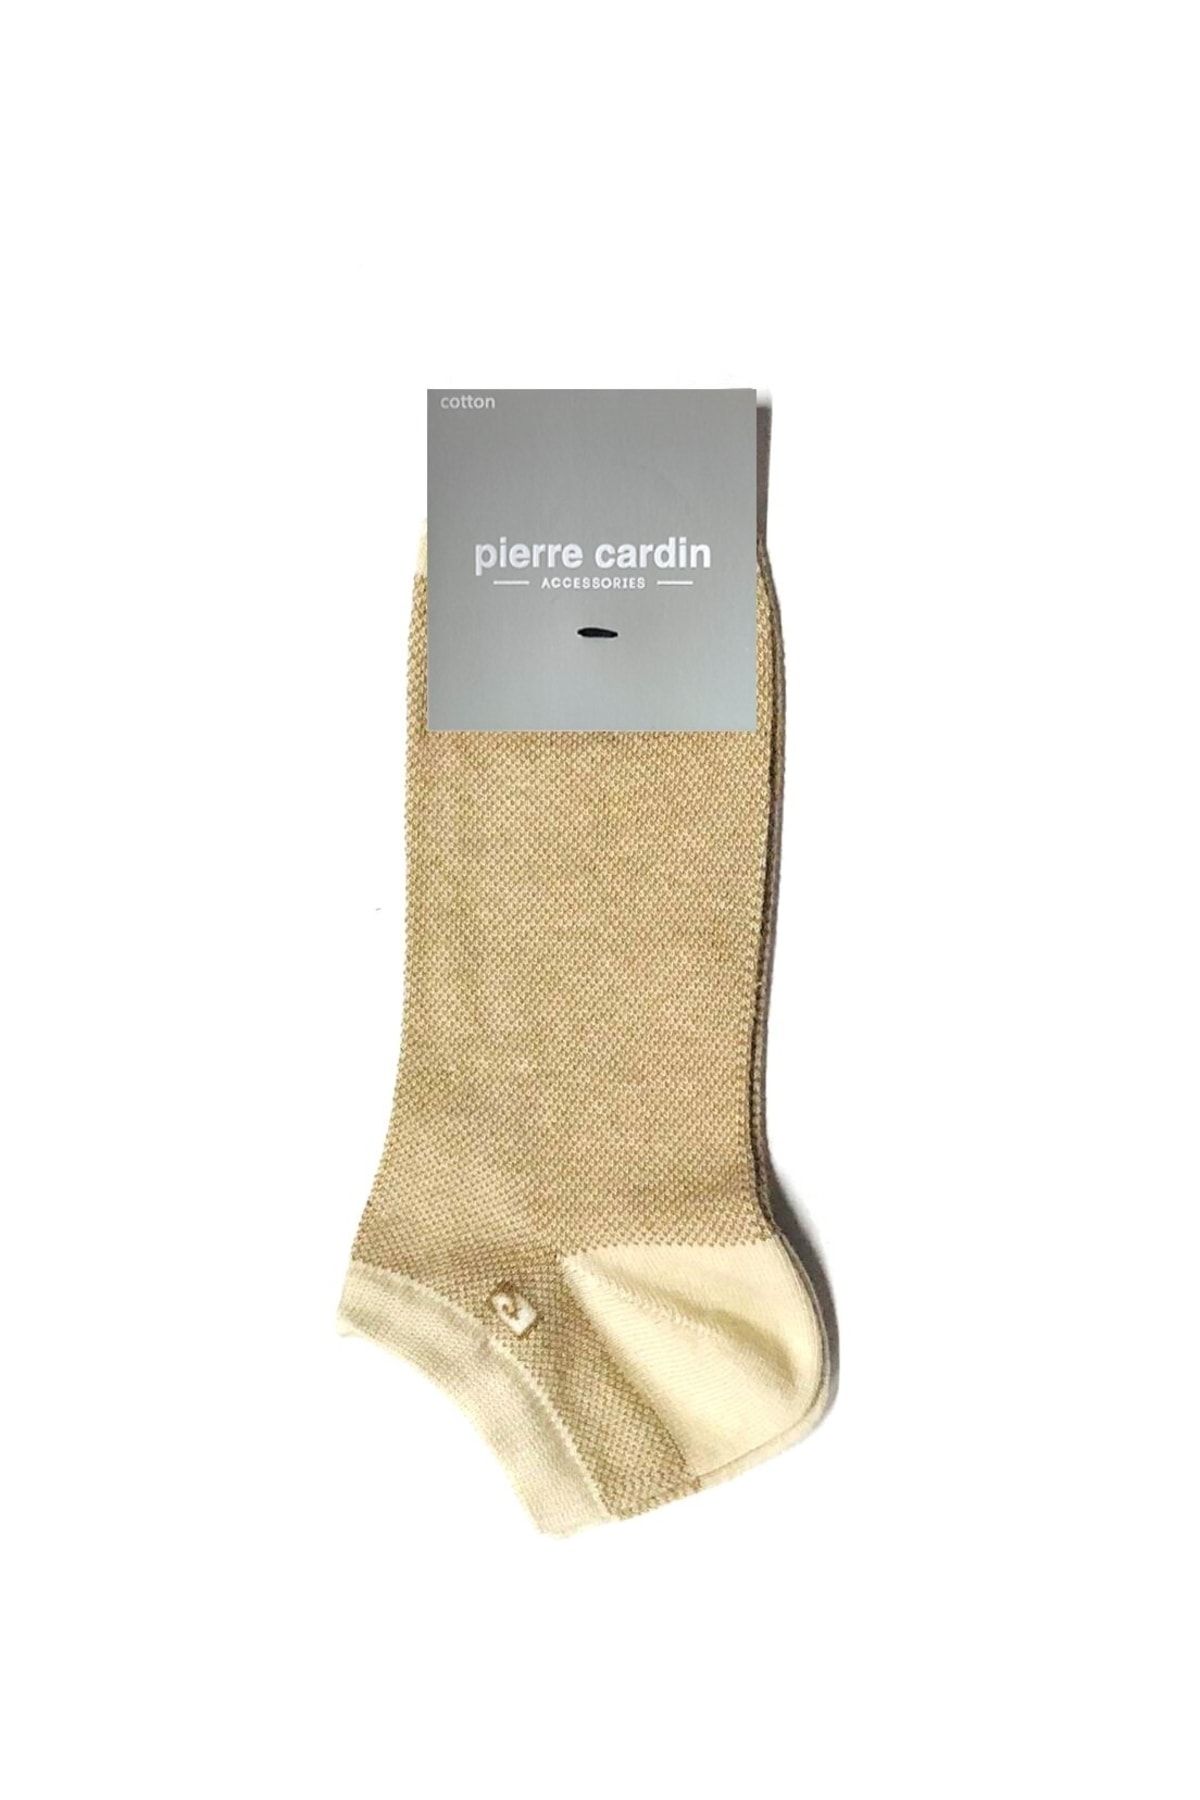 Pierre Cardin Lens Pamuk Erkek Patik Çorap Bej